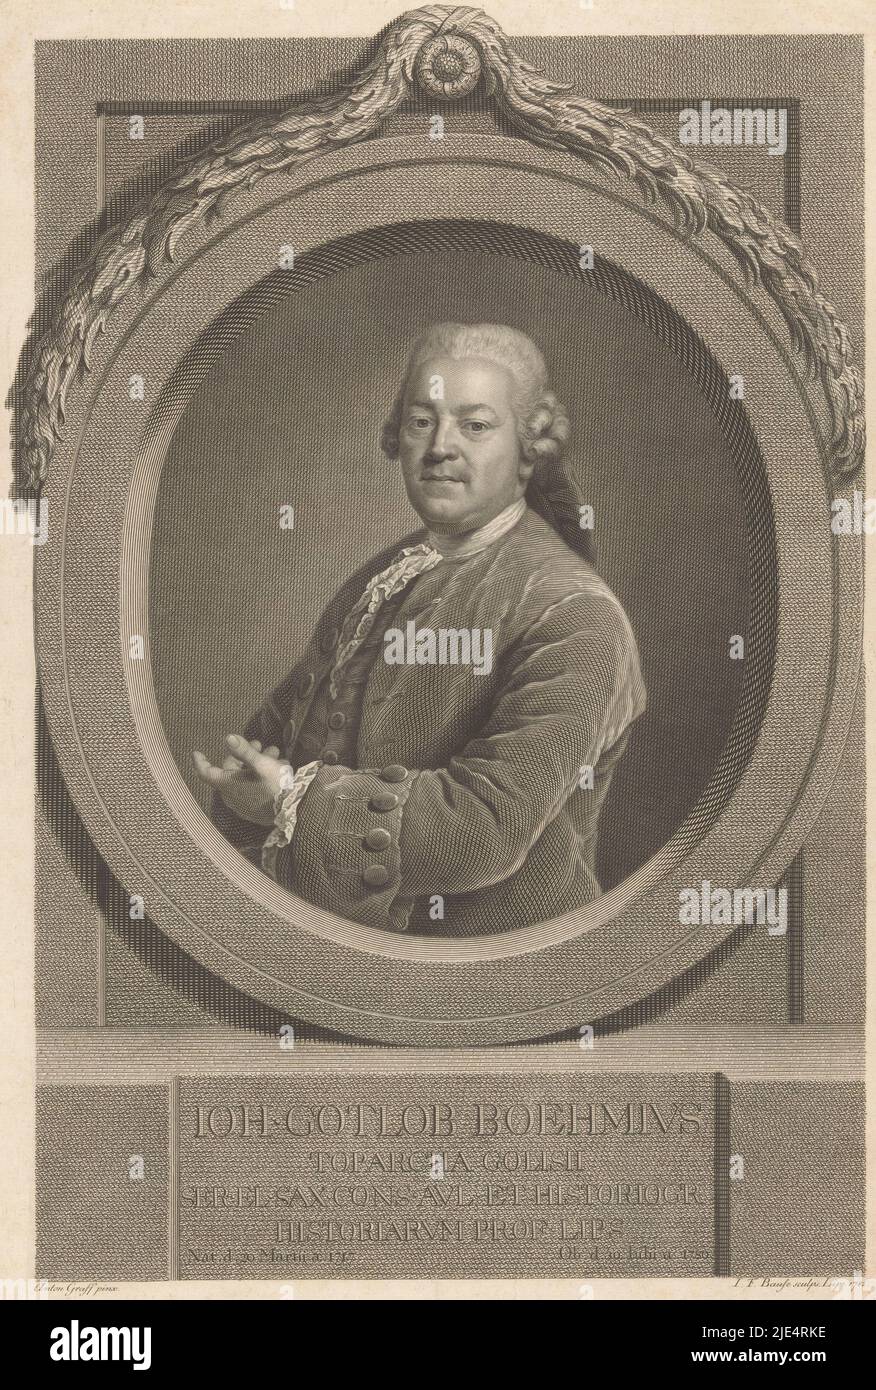 Portrait de Johann Gottlob Böhme, imprimeur: Johann Friedrich Bause, (mentionné sur l'objet), d'après: Anton Graff, (mentionné sur l'objet), Leipzig, 1782, papier, gravure, gravure, h 383 mm × l 263 mm Banque D'Images